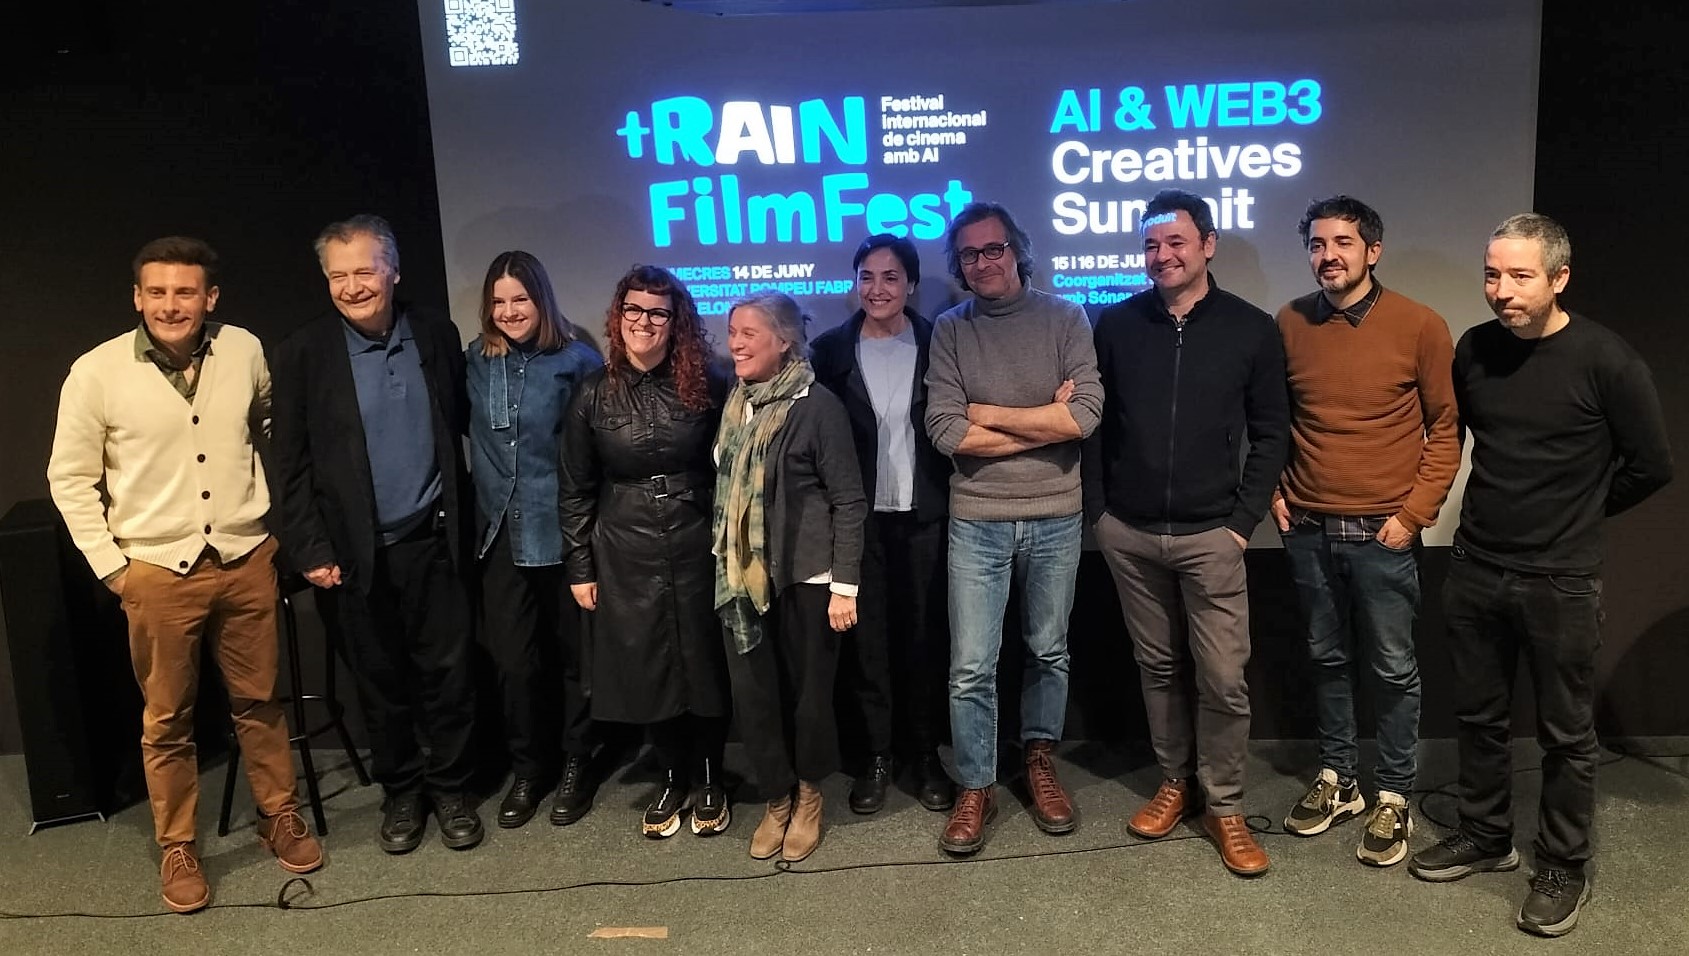 +Rain Film Fest, el primer festival europeu de films generats amb intel·ligència artificial, una iniciativa de la UPF de la mà de Sónar+D 2023